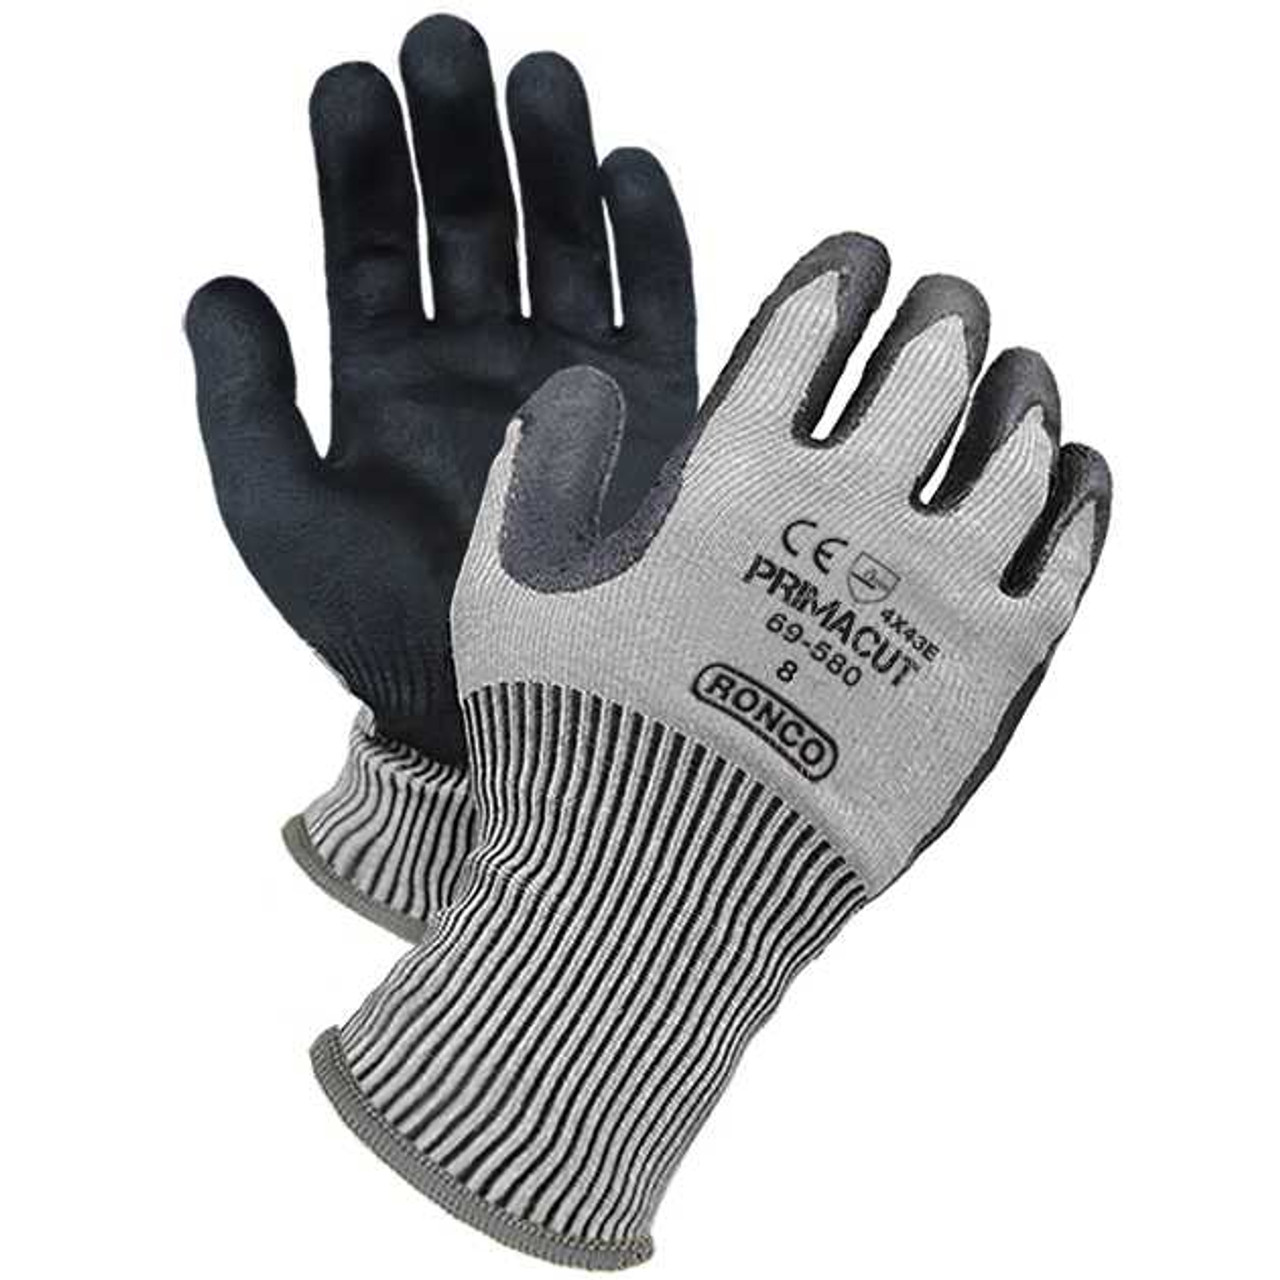 PrimaCut™ 69-580 PU Palm Coated HPPE Glove, Cut Level: CE 5 / ANSI 4 (48 pairs / case)